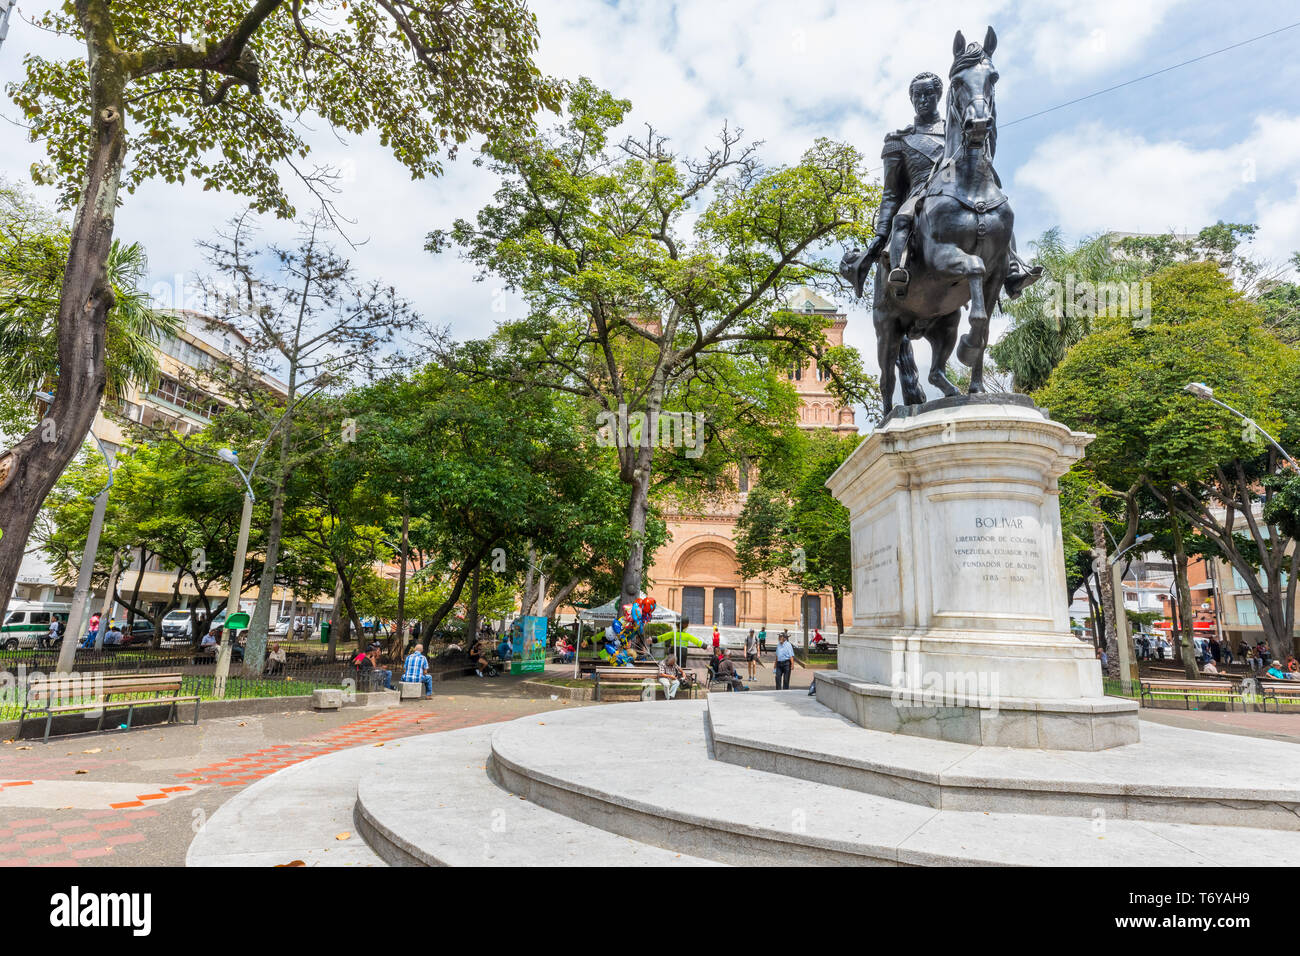 Bolivar square Medellin equestrian statue Colo Stock Photo